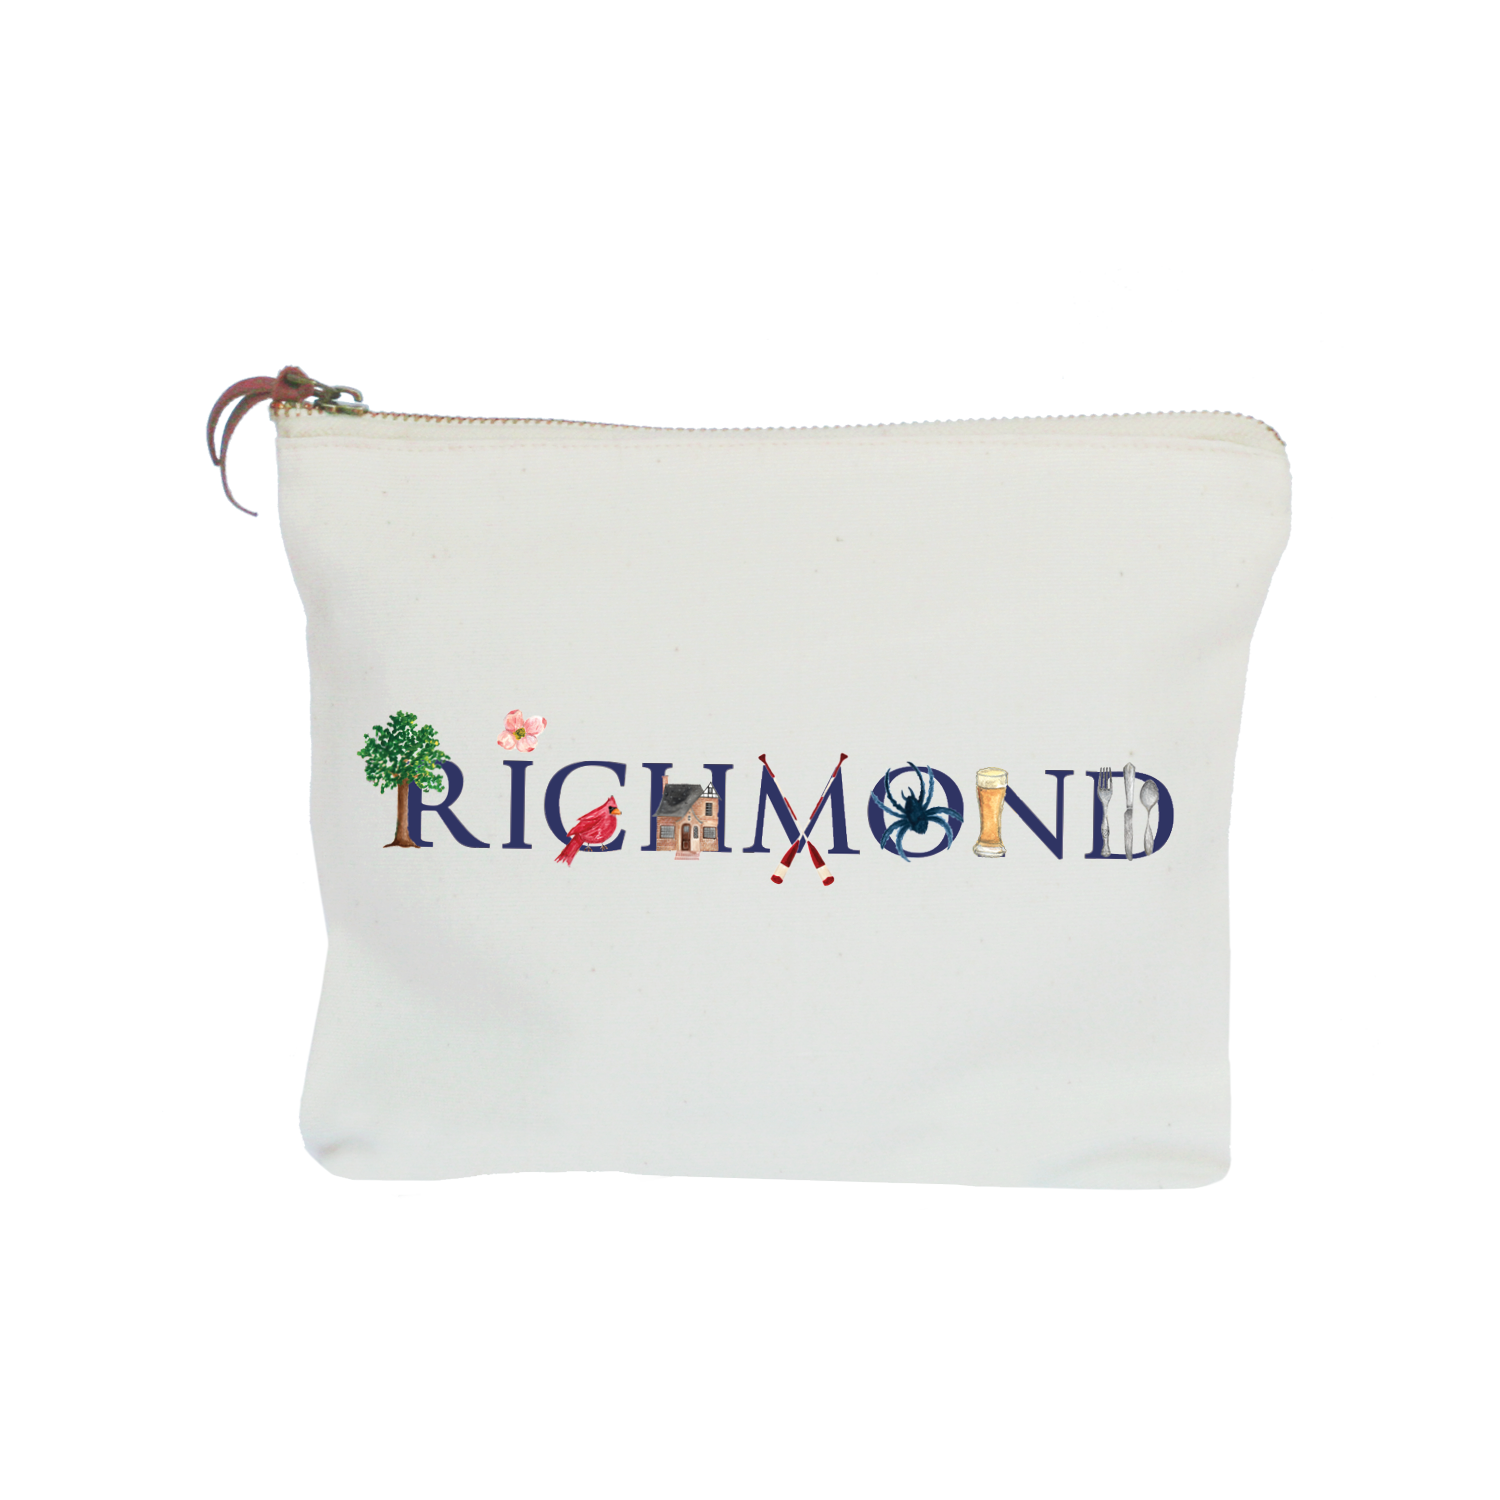 richmond, va zipper pouch